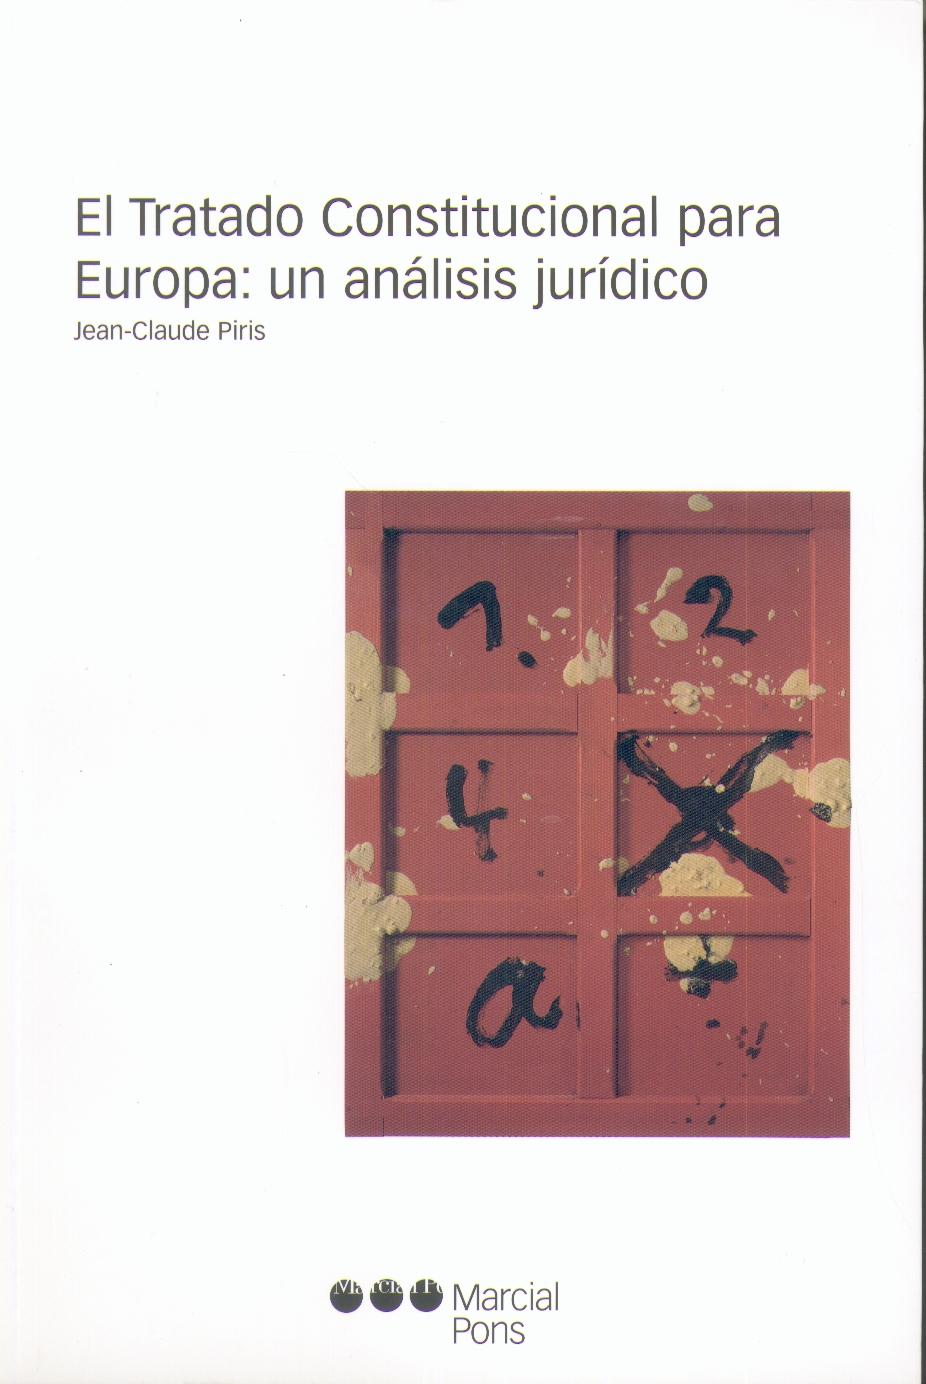 El Tratado Constitucional para Europa: un Analisis Juridico.